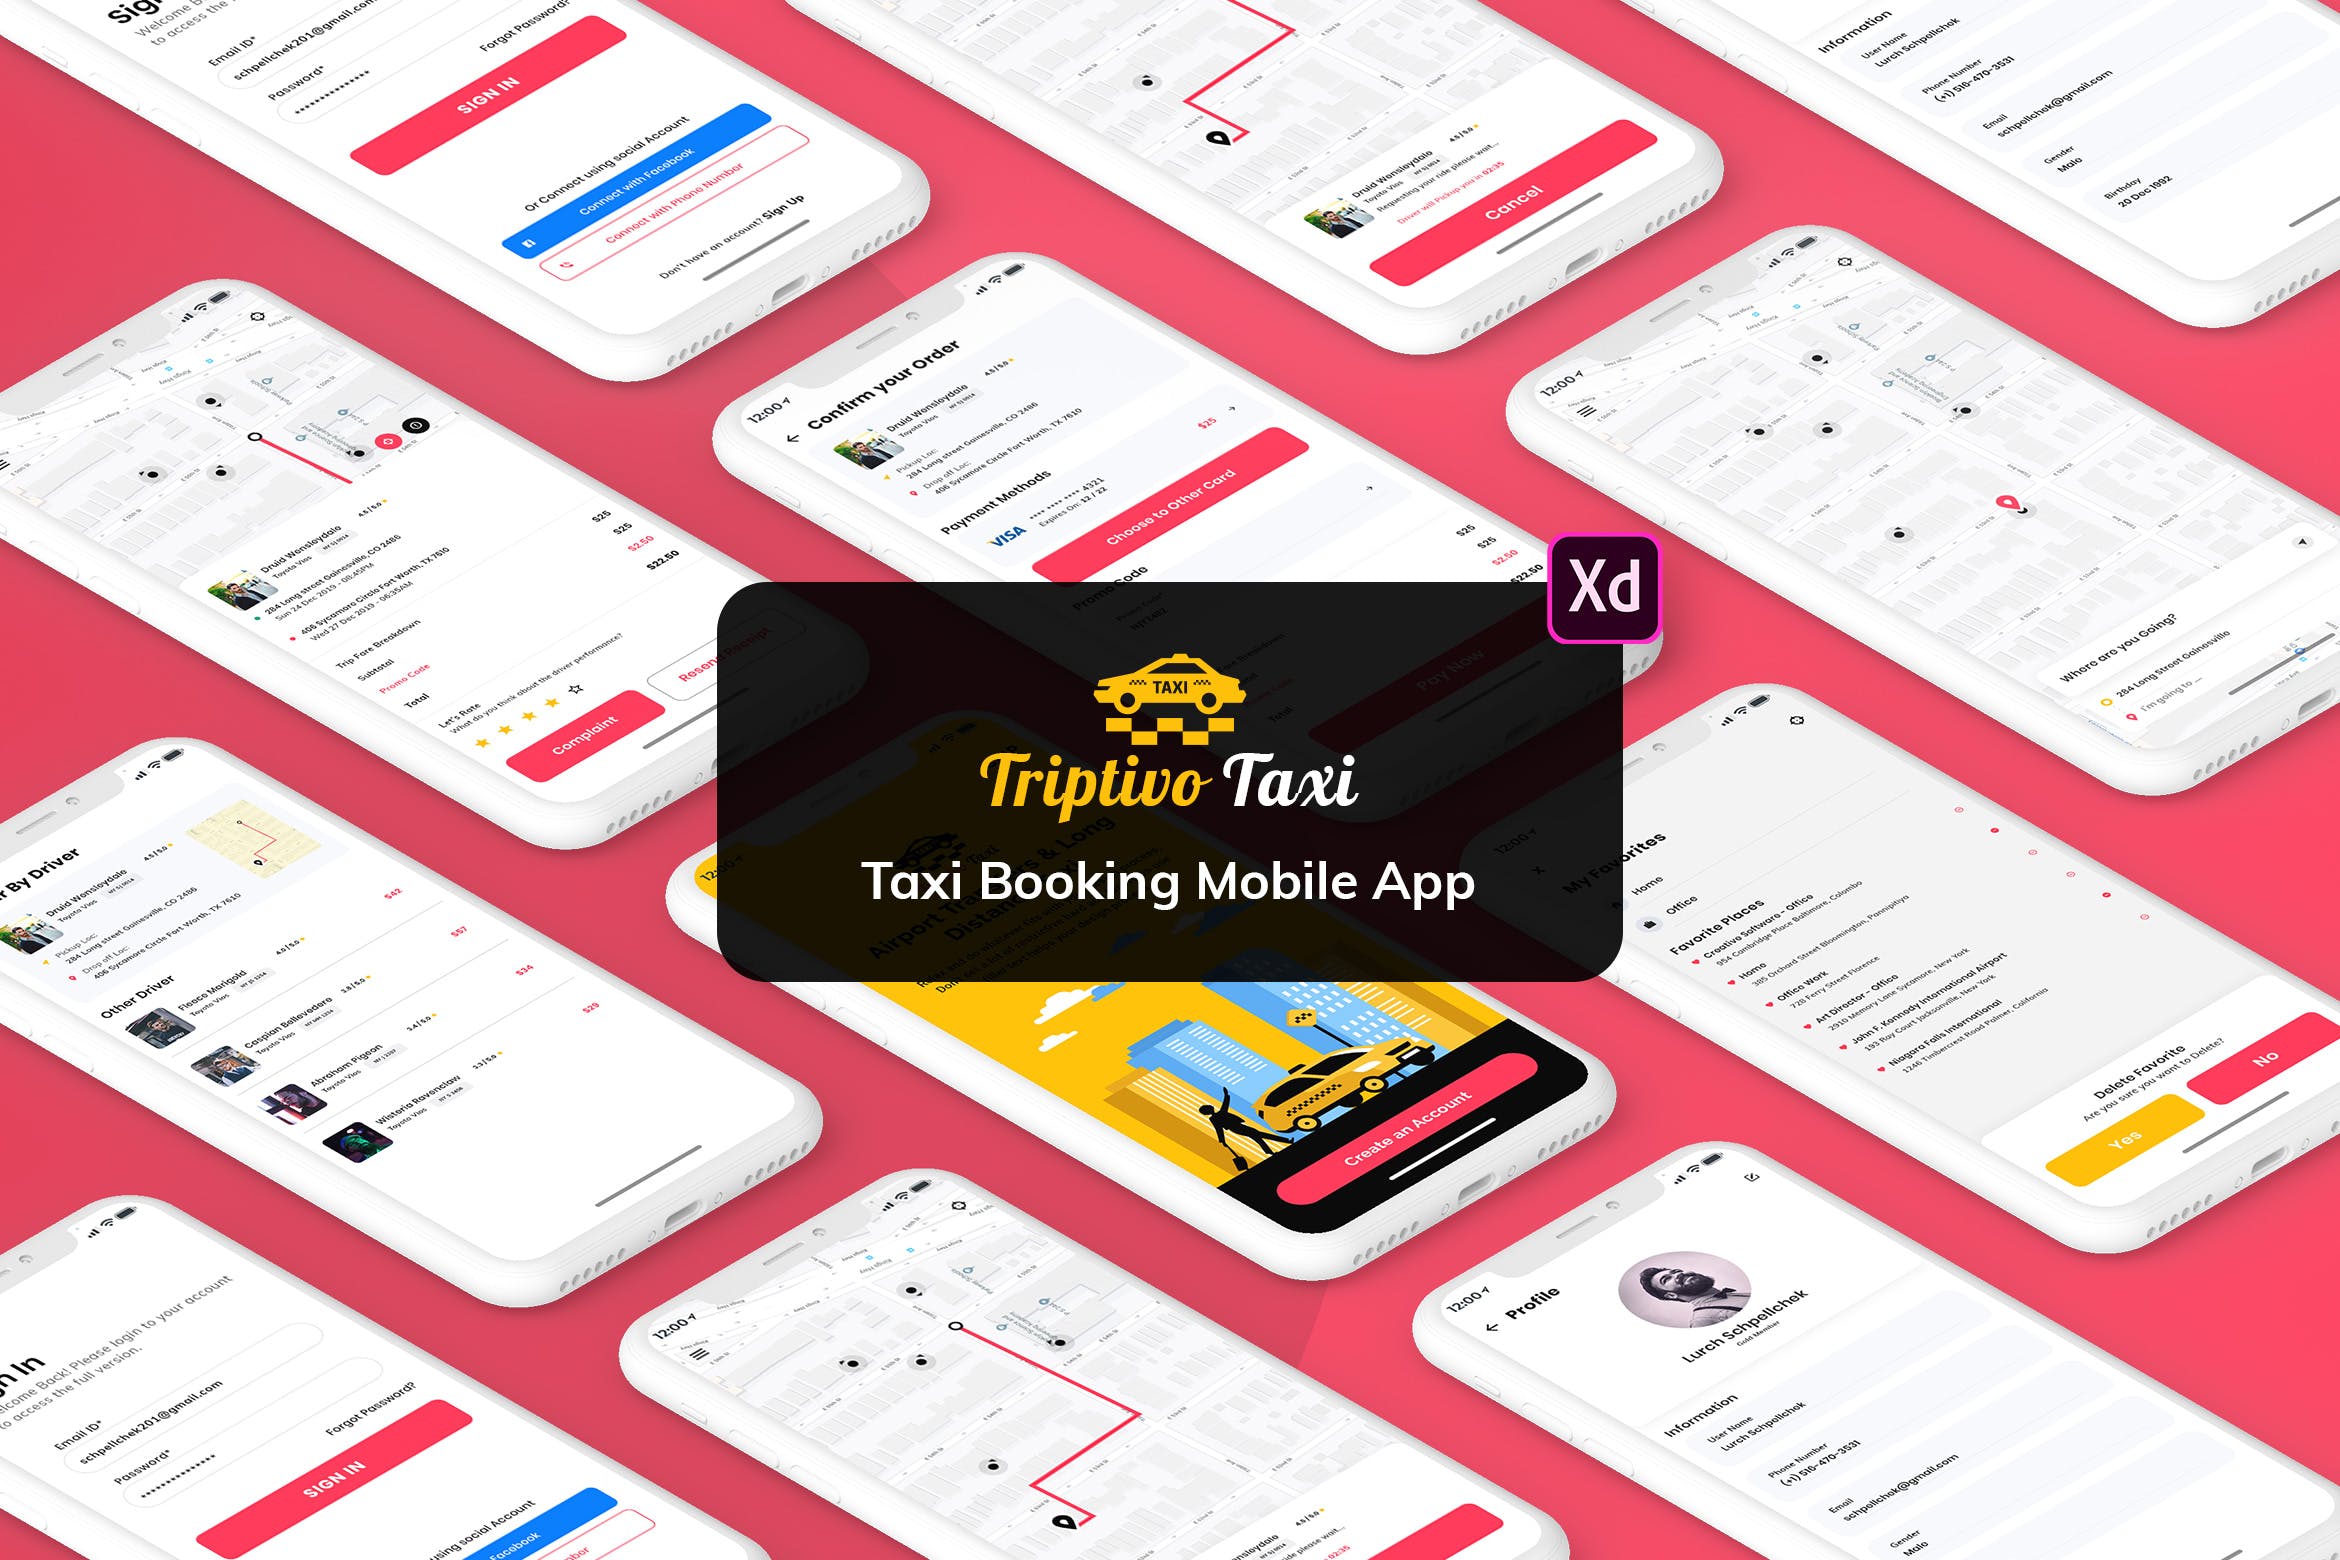 网约车顺风车APP应用UI界面设计XD模板[日间版本] Taxi Booking Mobile App UI Kit Light Version (XD)插图